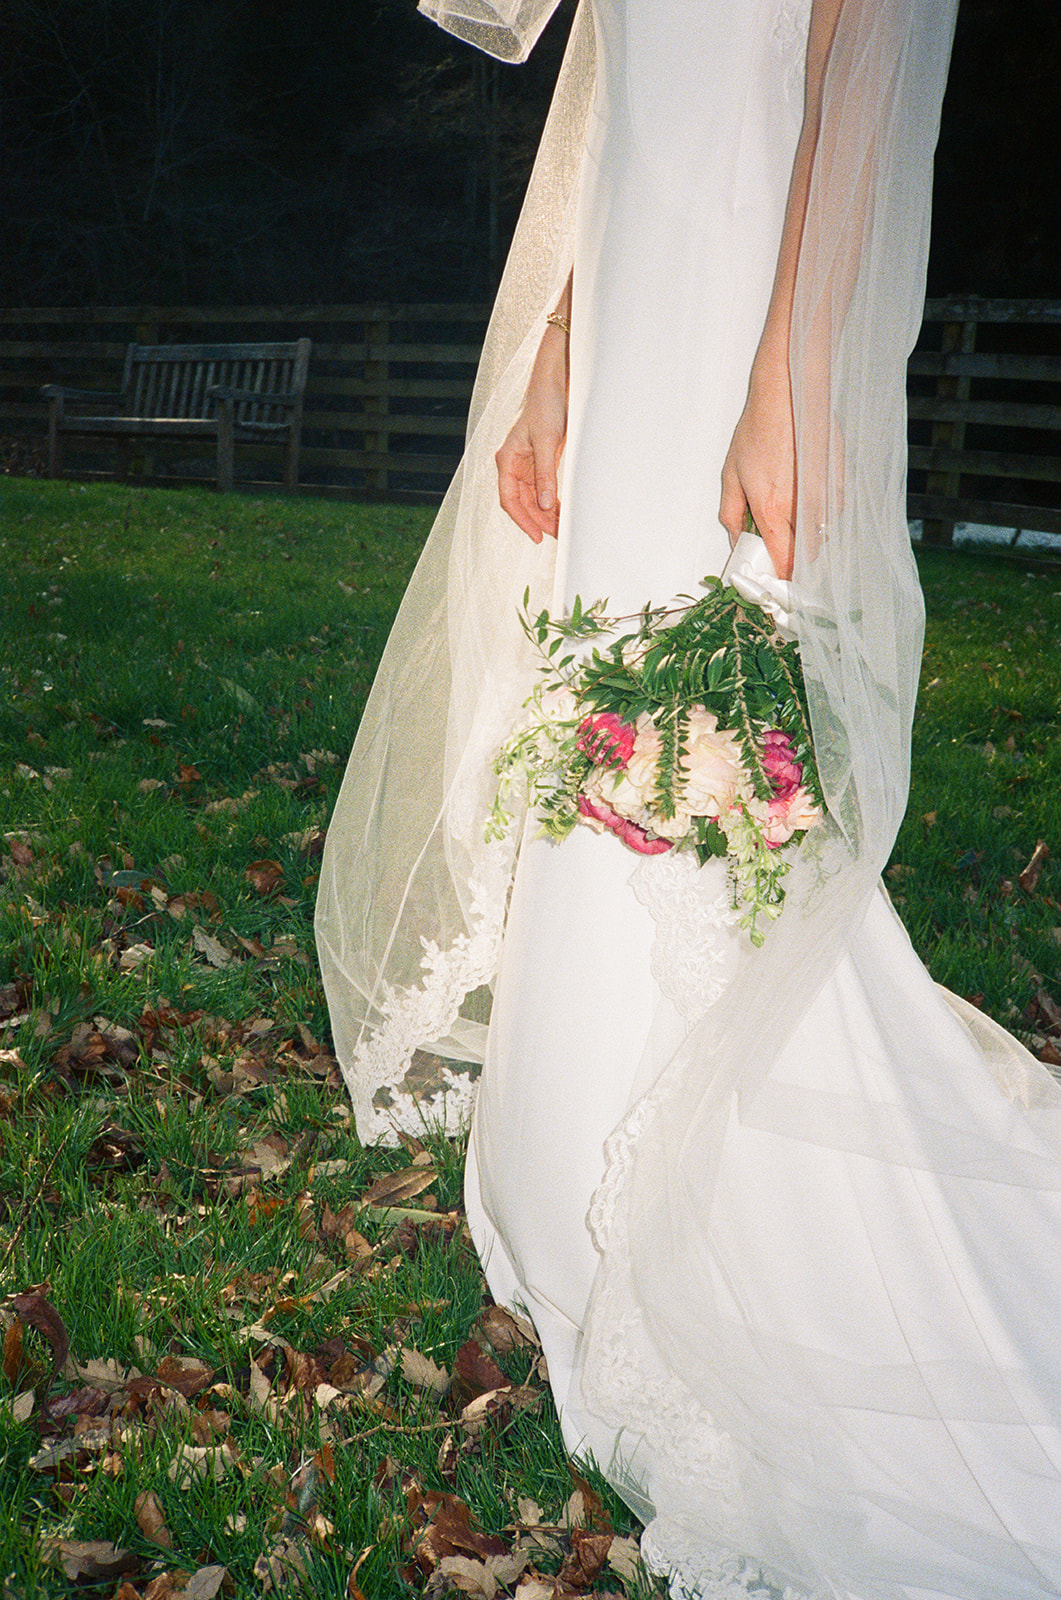 Brinkburn Priory Wedding | Leica Q & Leica M6 Cameras | Portra 800 & Tri X Film